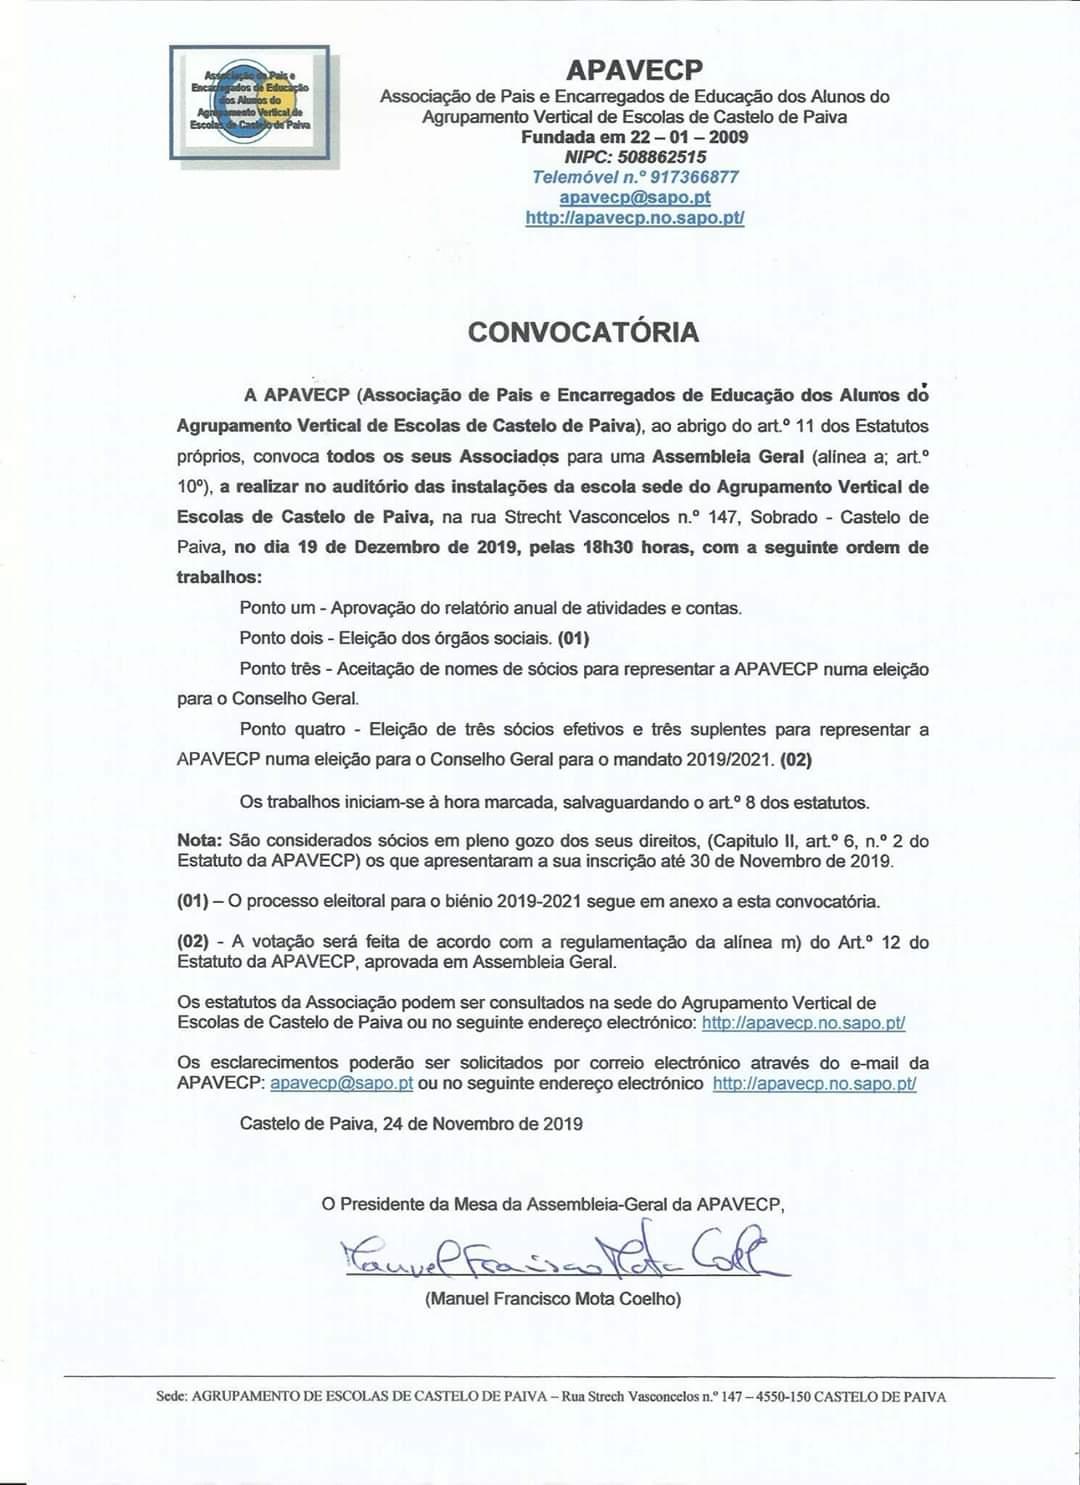 ASSOCIAÇÃO DE PAIS e E.E. do AGRUPAMENTO DE ESCOLAS DE C. PAIVA (APAVECP) - CONVOCATÓRIA